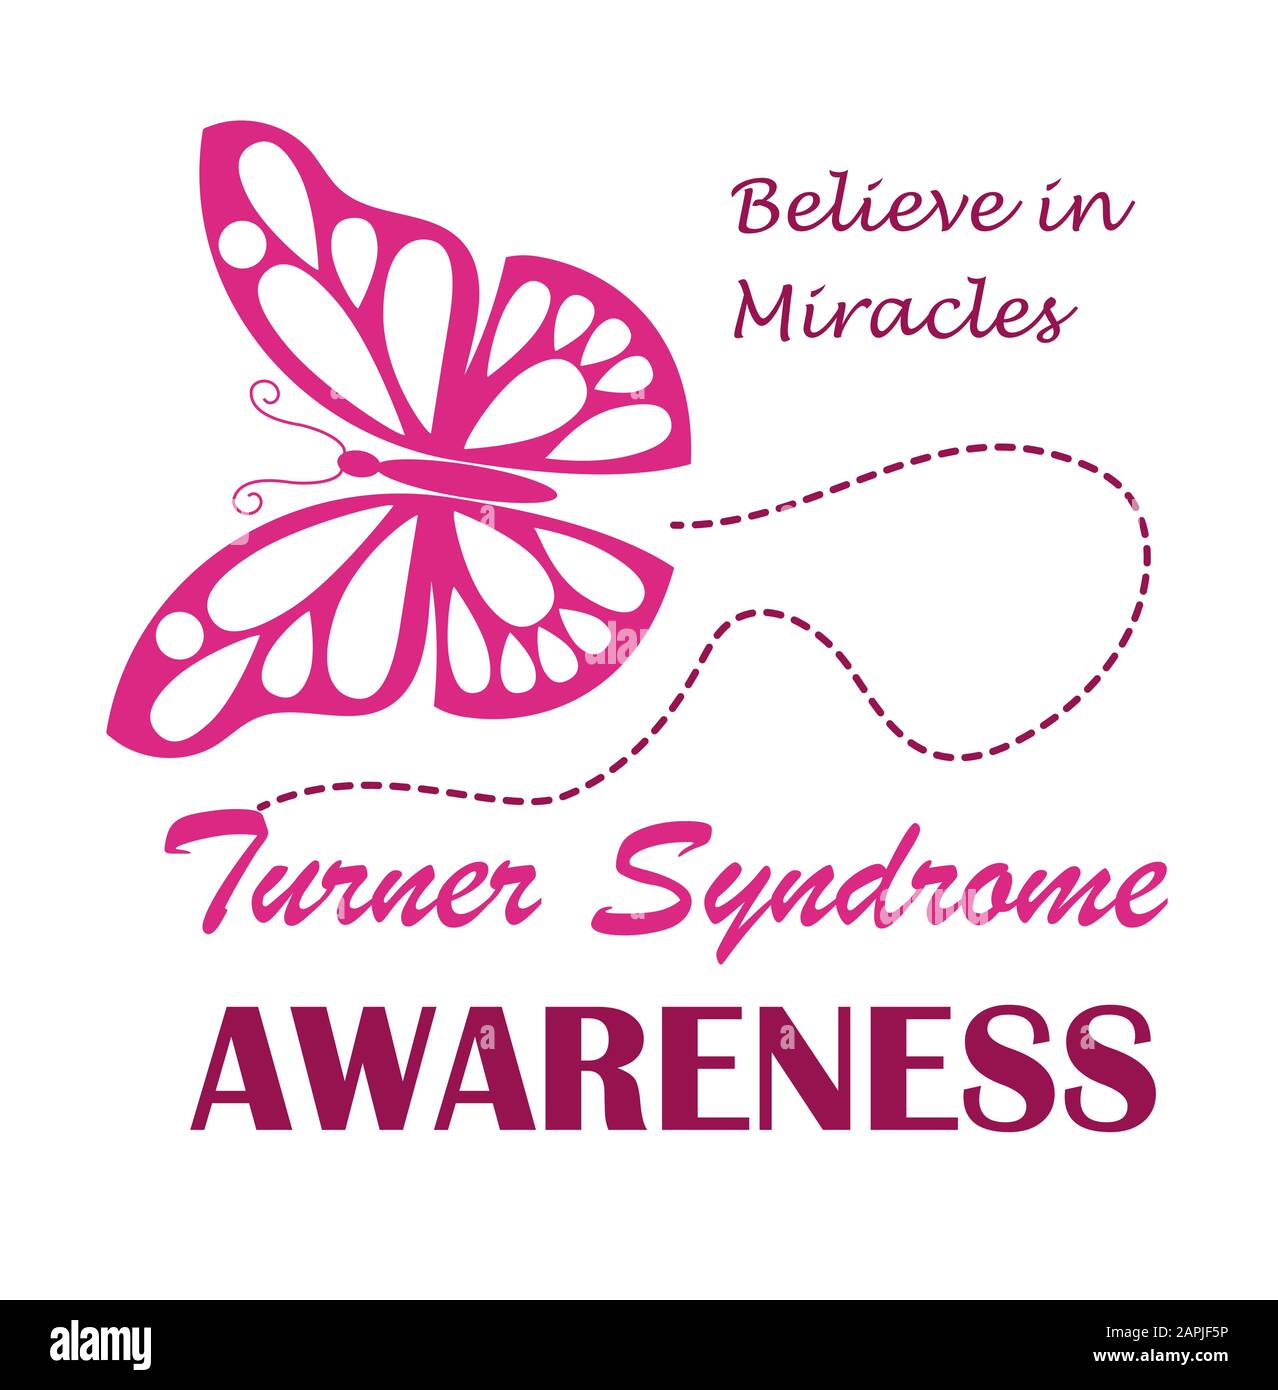 Turner Syndrome Awareness Month wird ib Februar gefeiert. Pink Schmetterling Symbol Vektor auf weißem Hintergrund . Glauben Sie an Wunder Text und Krimson Stock Vektor